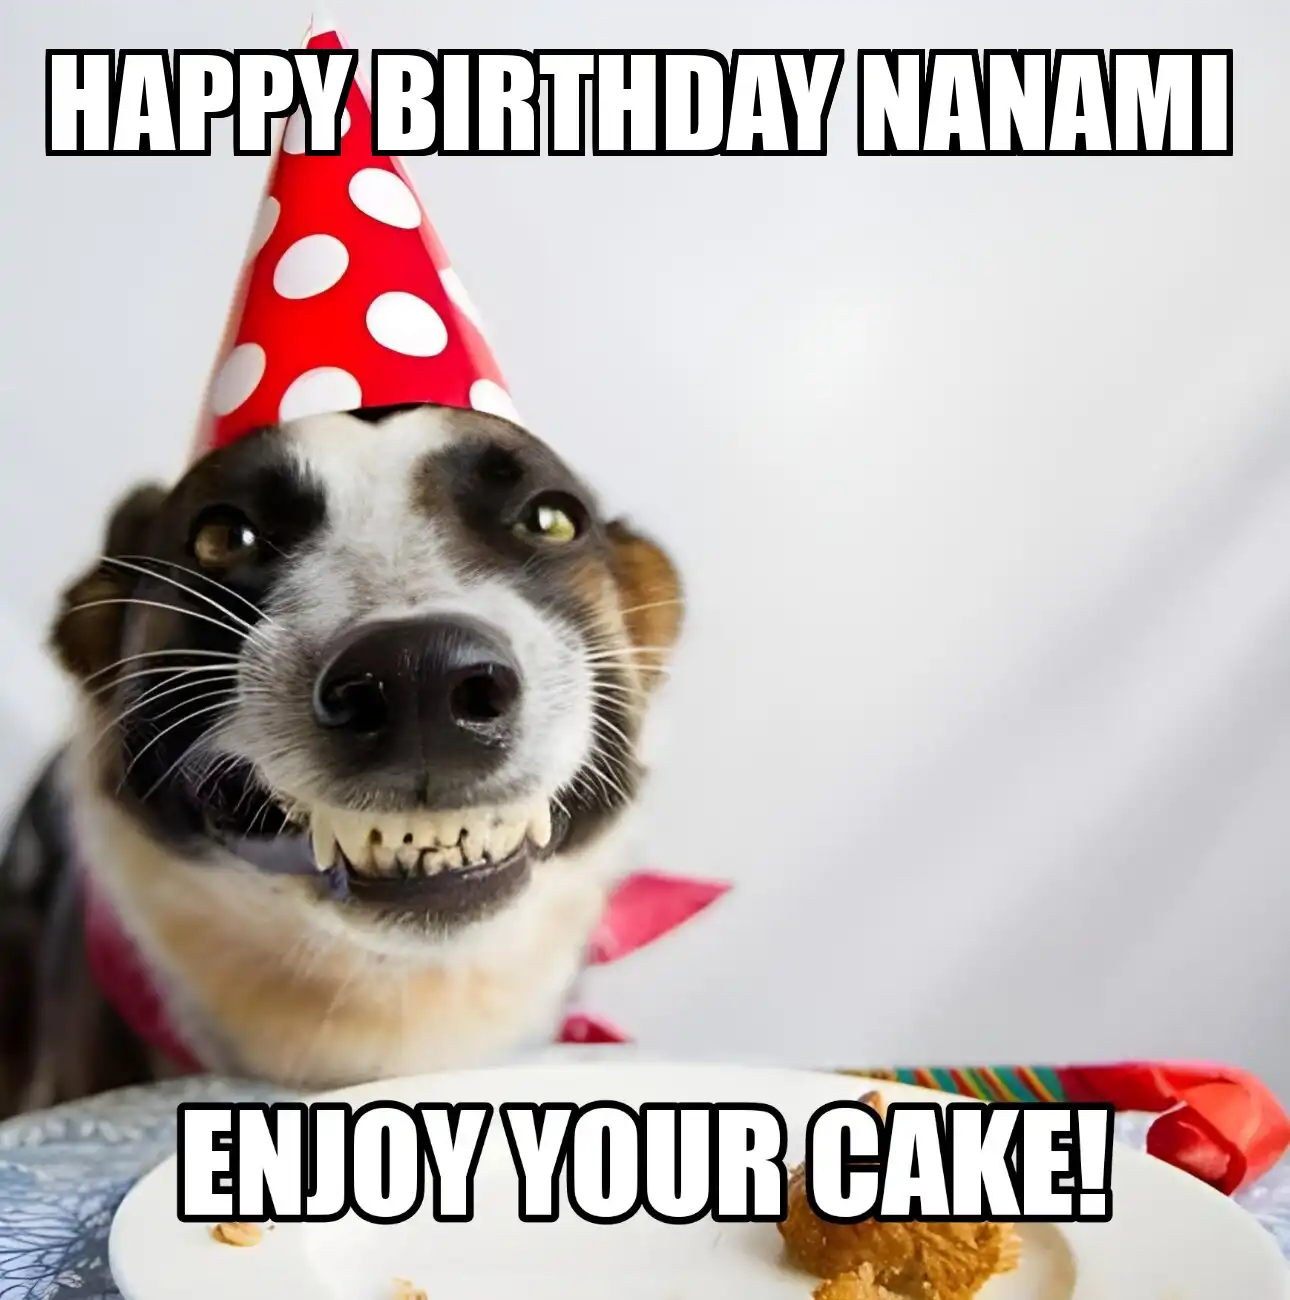 Happy Birthday Nanami Enjoy Your Cake Dog Meme